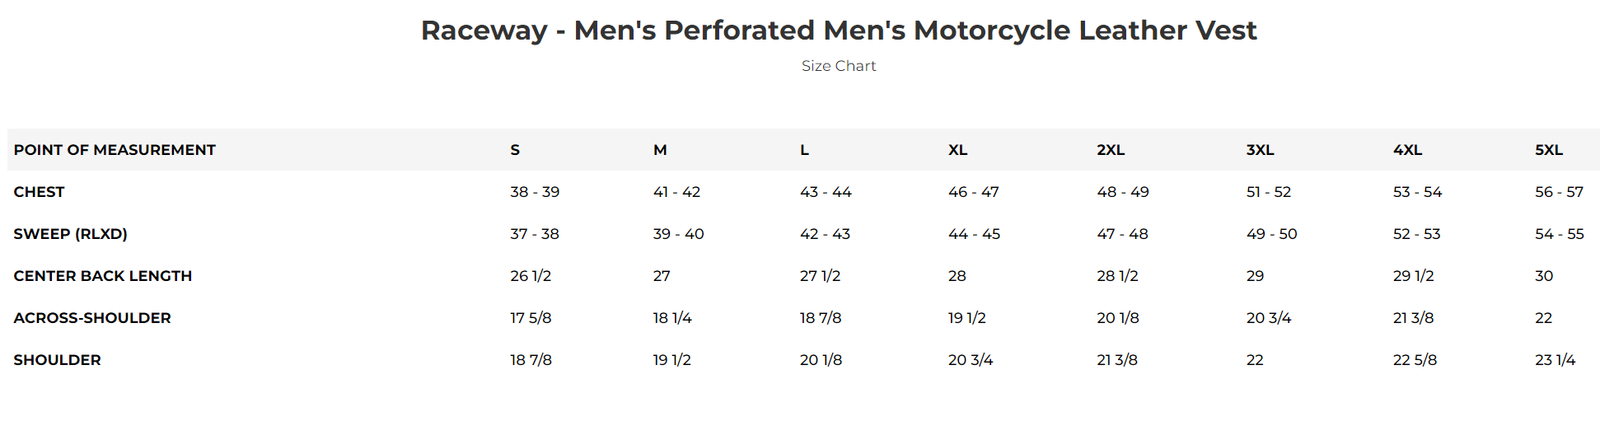 Size chart for Raceway men's leather vest.